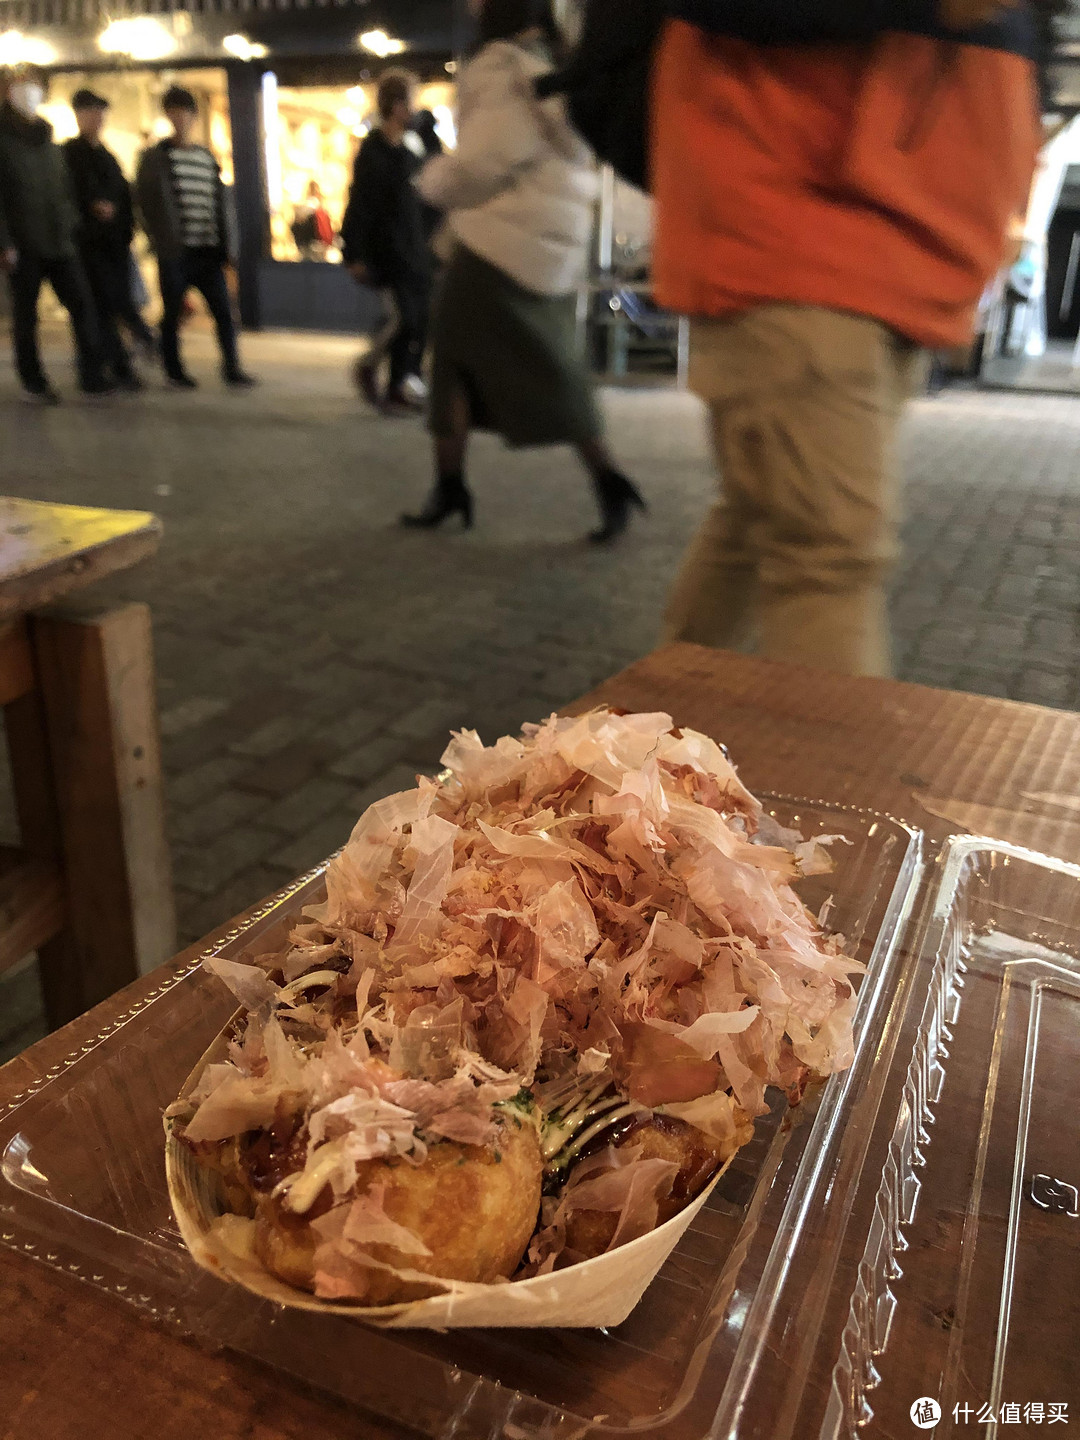 日本美食泡汤之旅完结篇